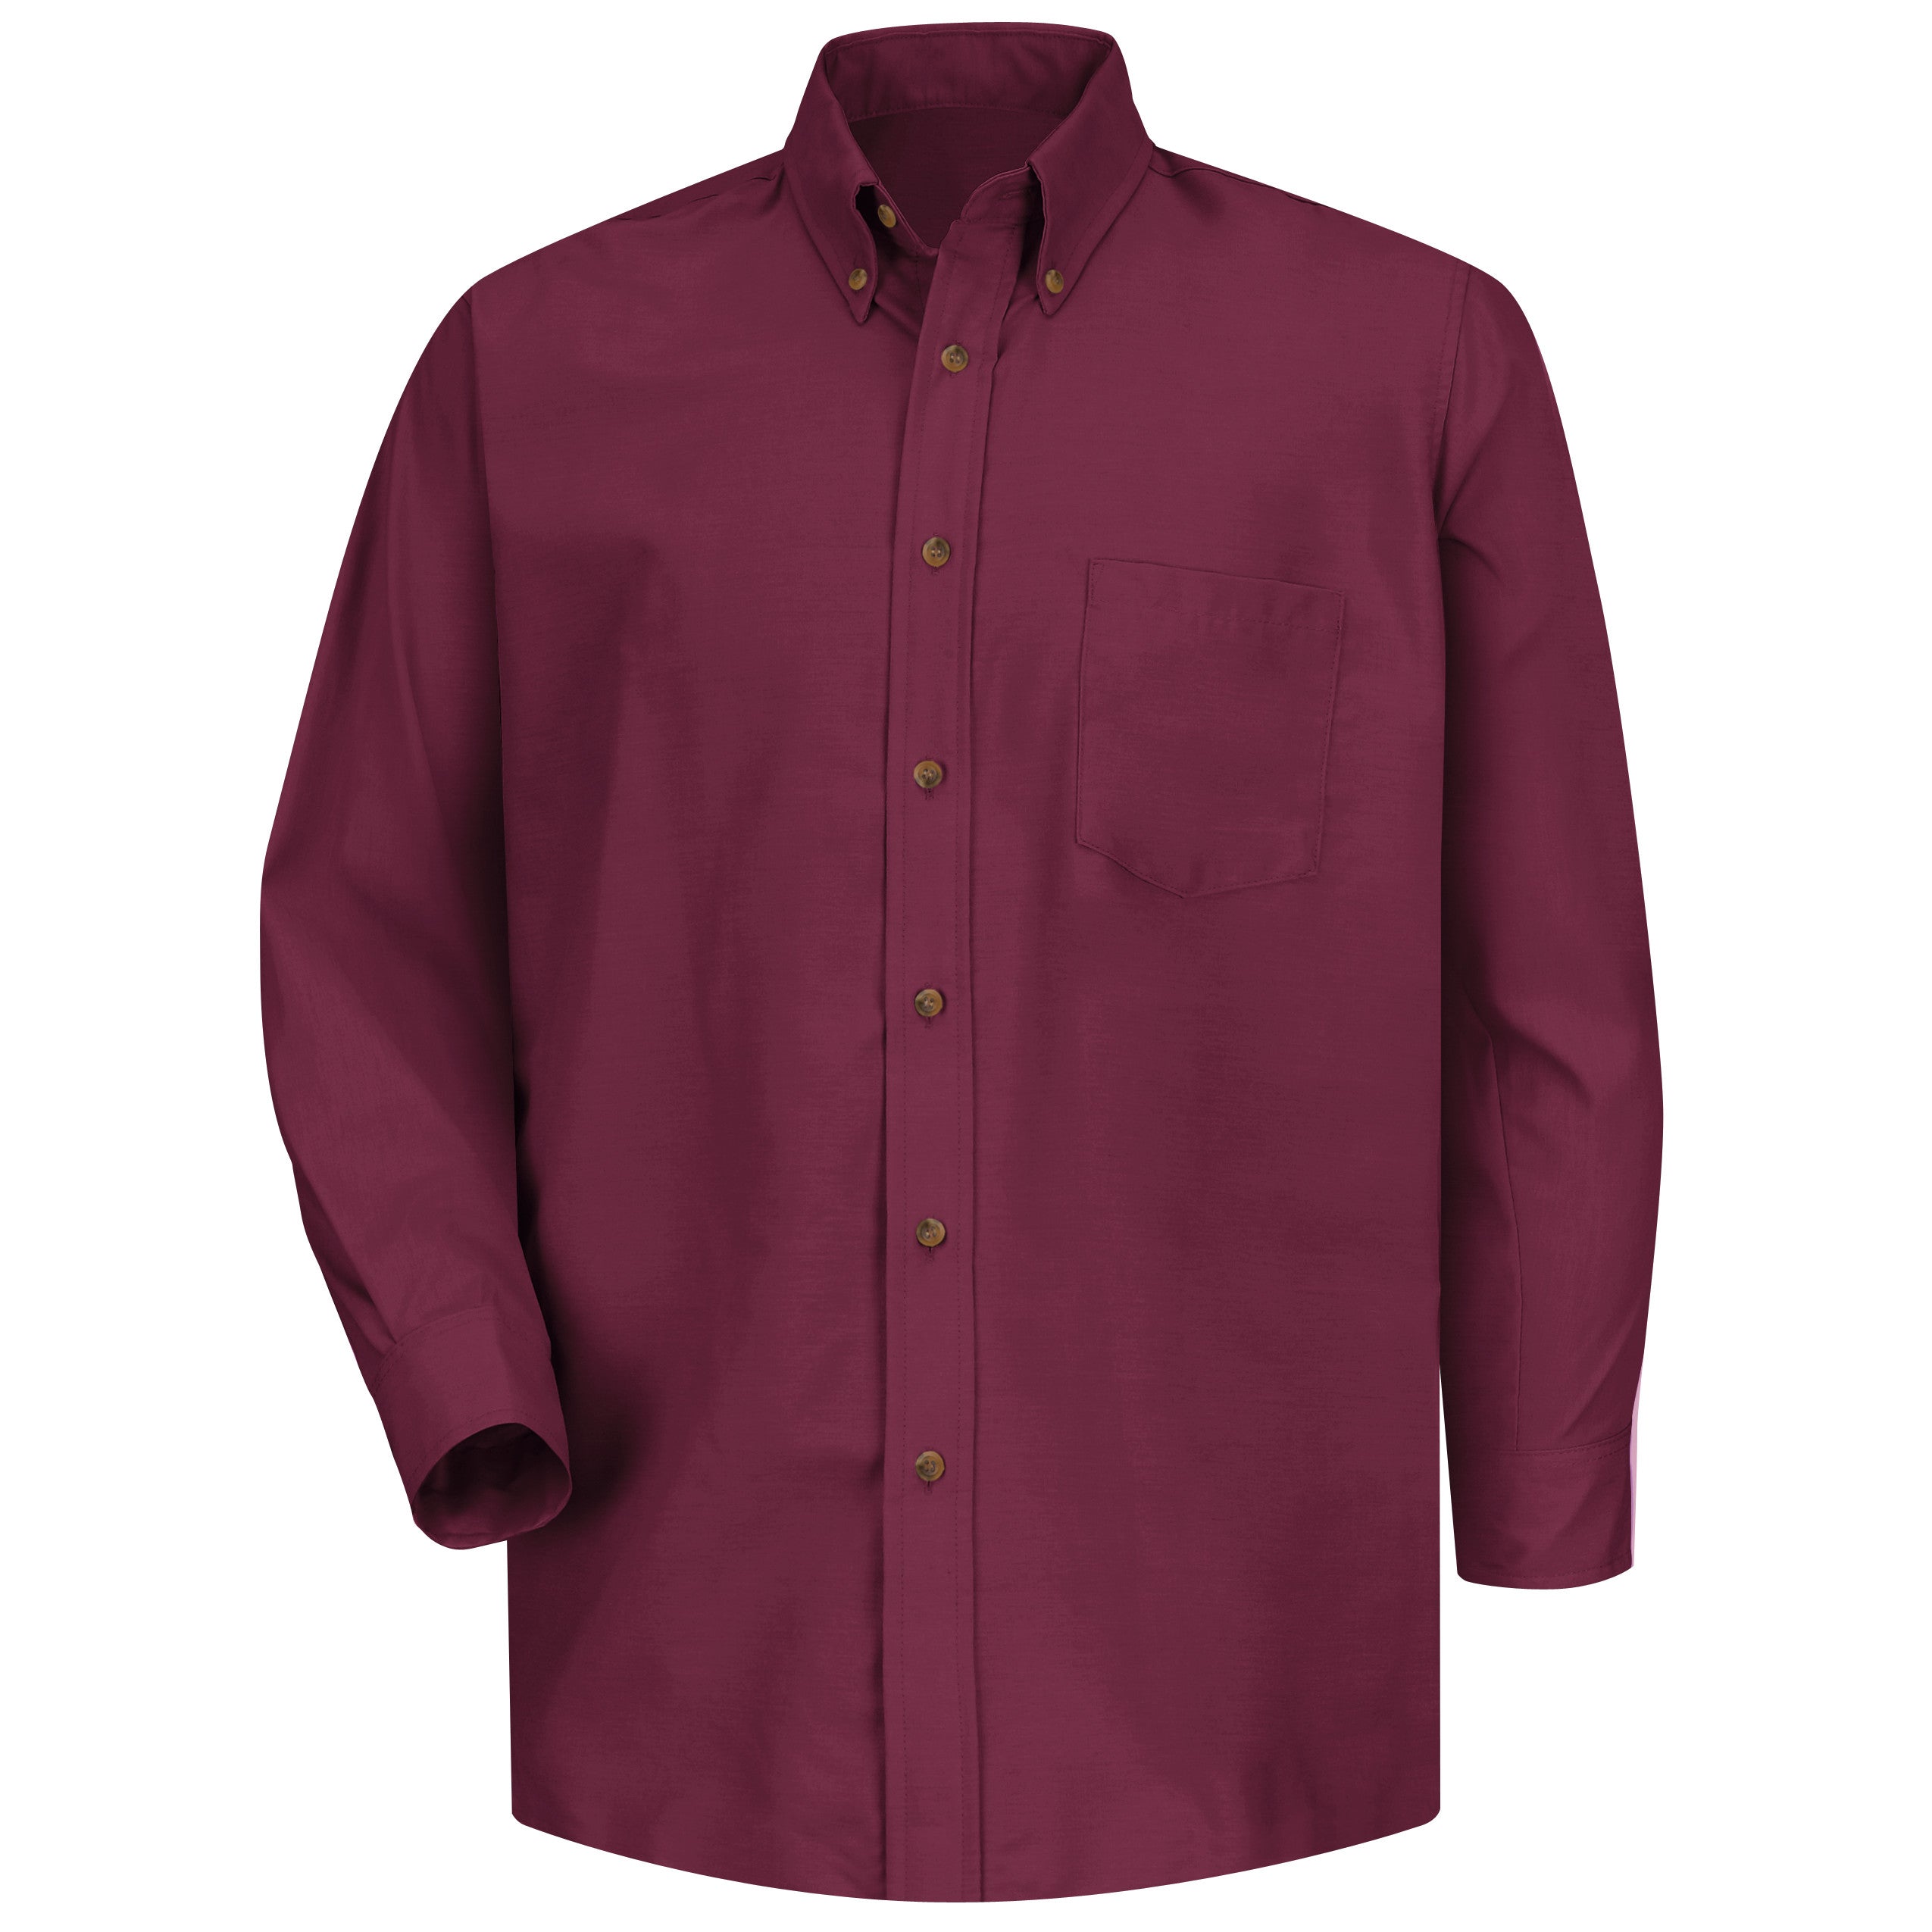 Men's Long Sleeve Poplin Dress Shirt SP90 - Burgundy-eSafety Supplies, Inc